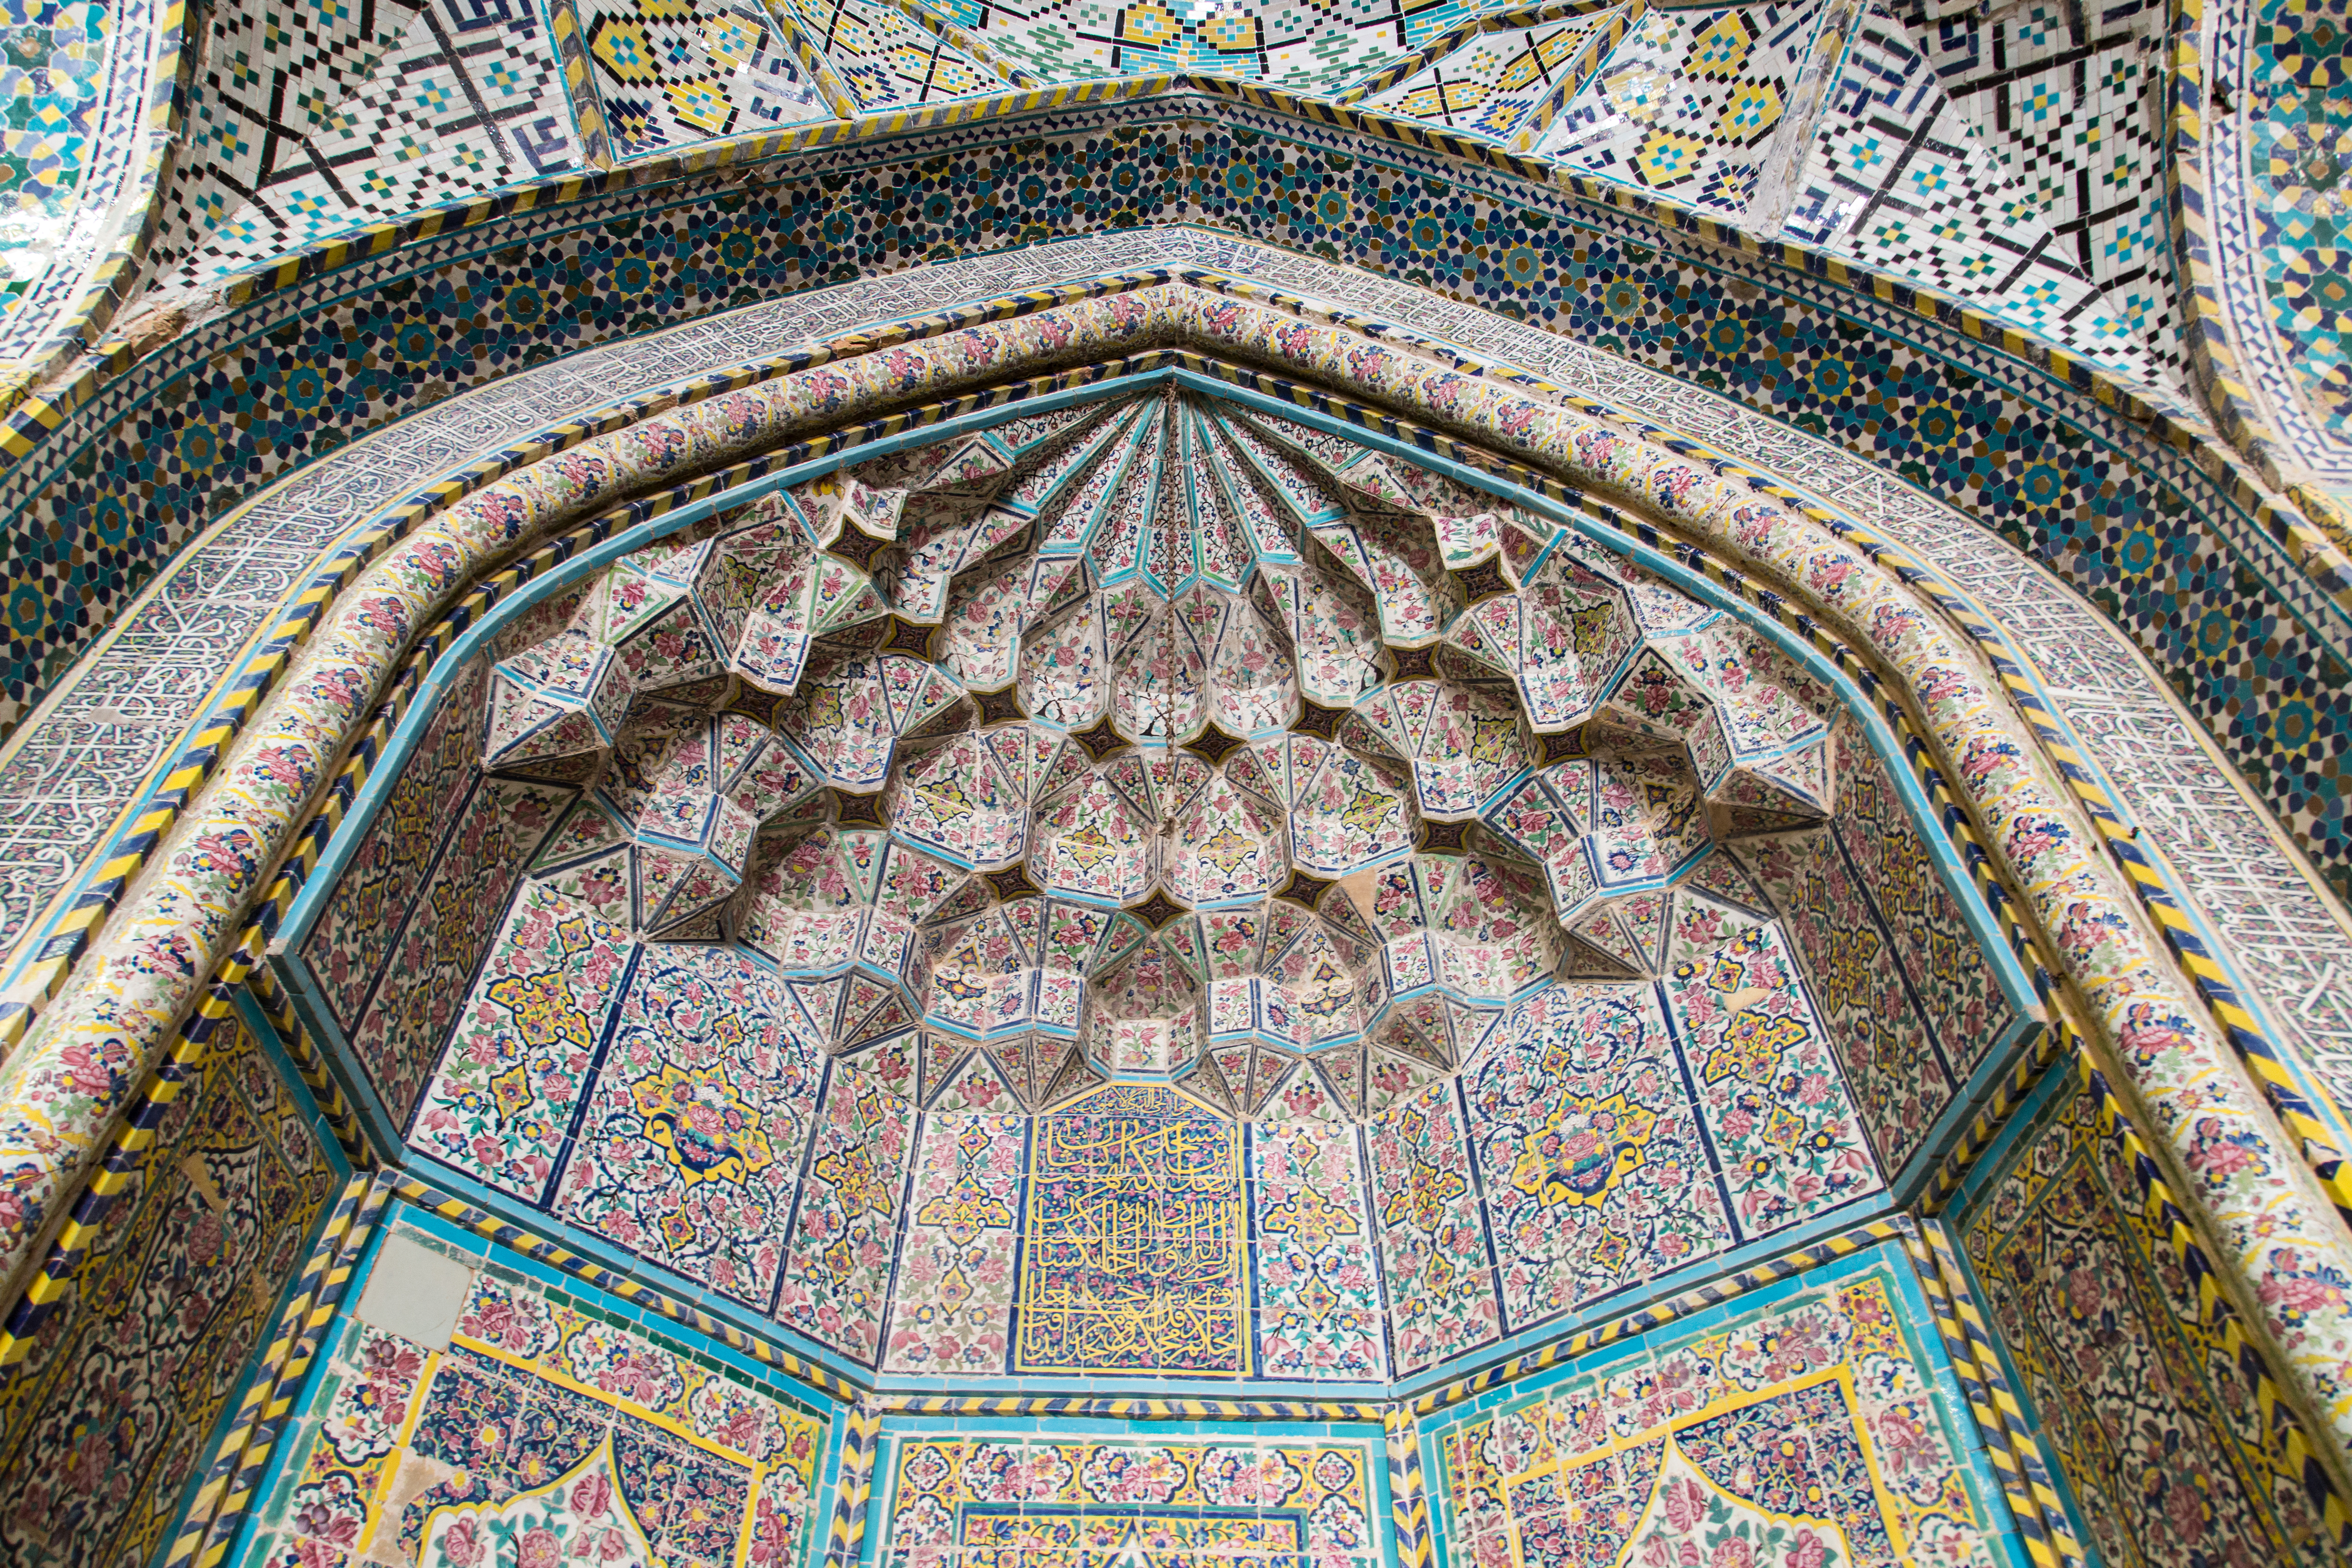 مسجد وکیل شیراز 